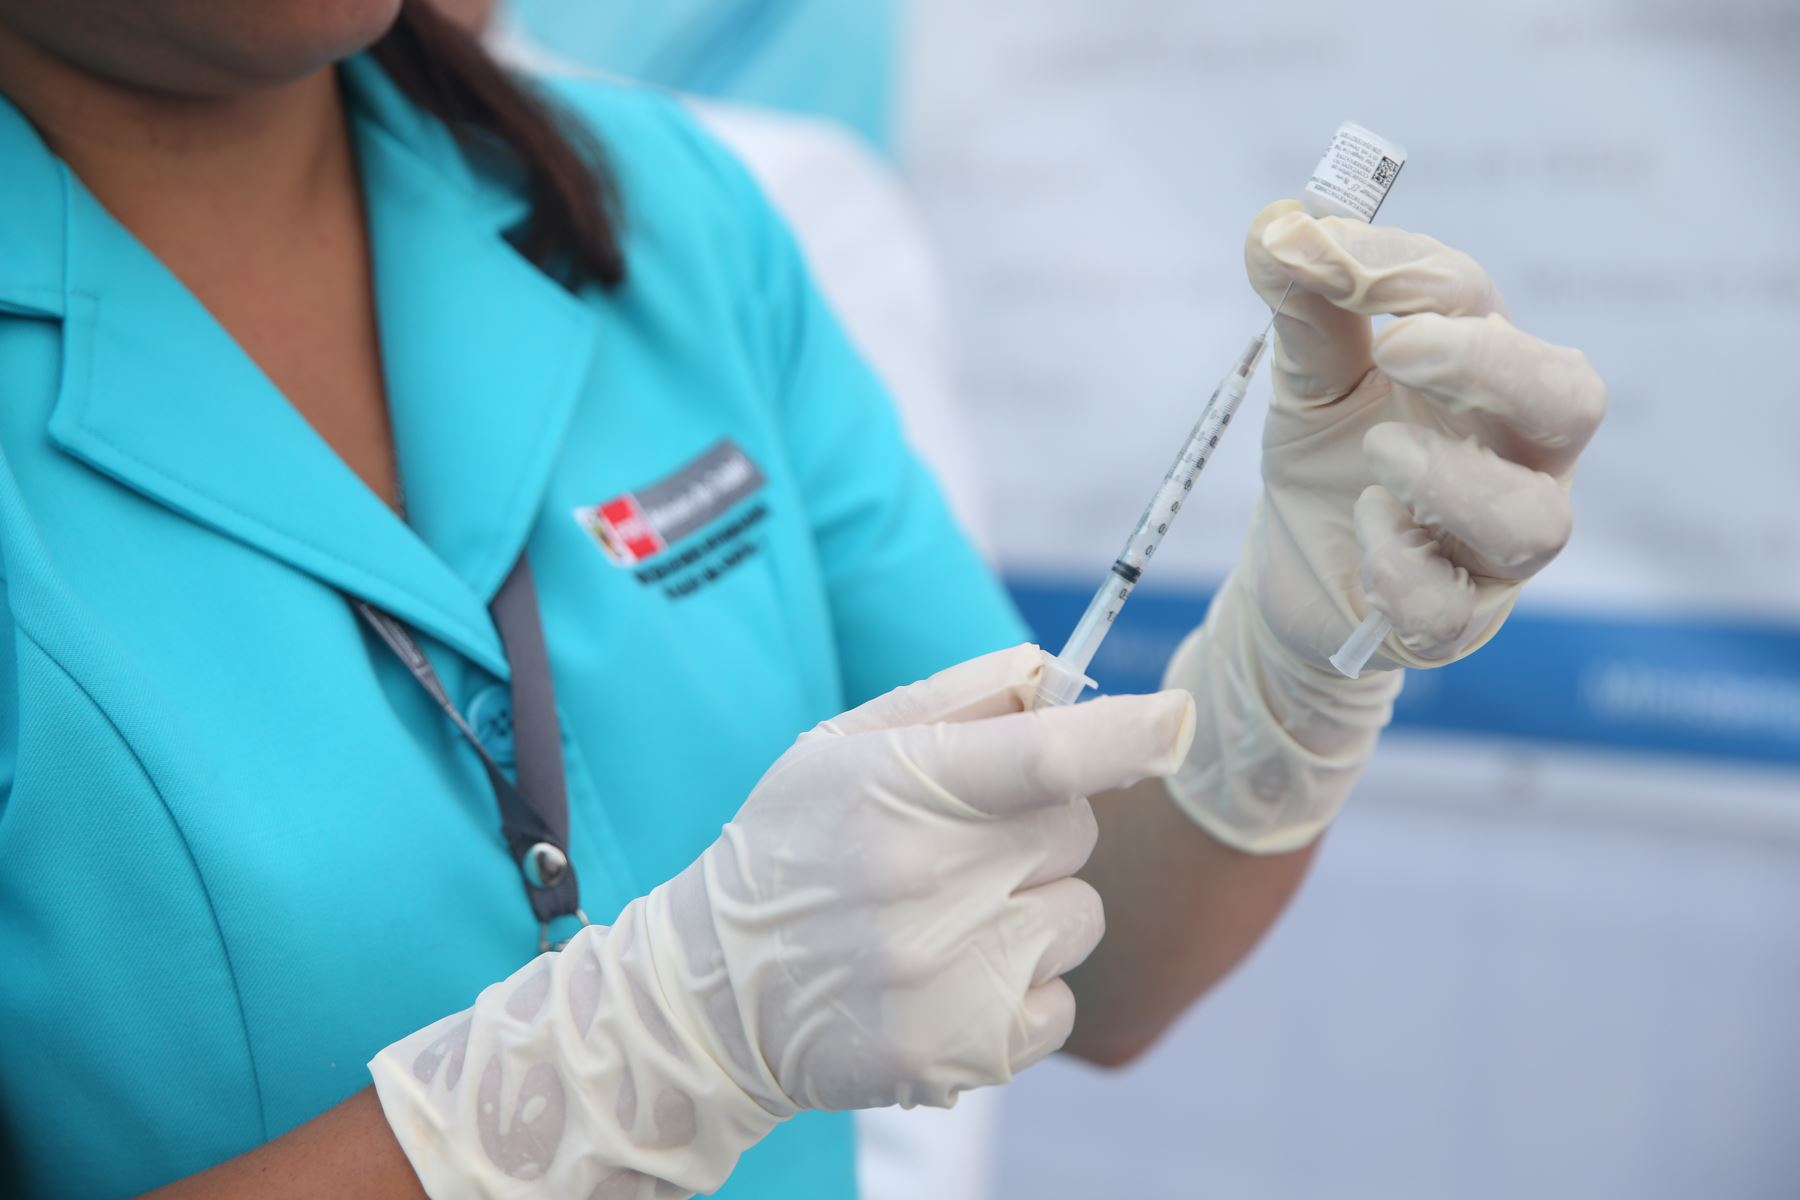 Banco mundial: El rebote de la economía peruana a 7.6% dependerá de la vacuna